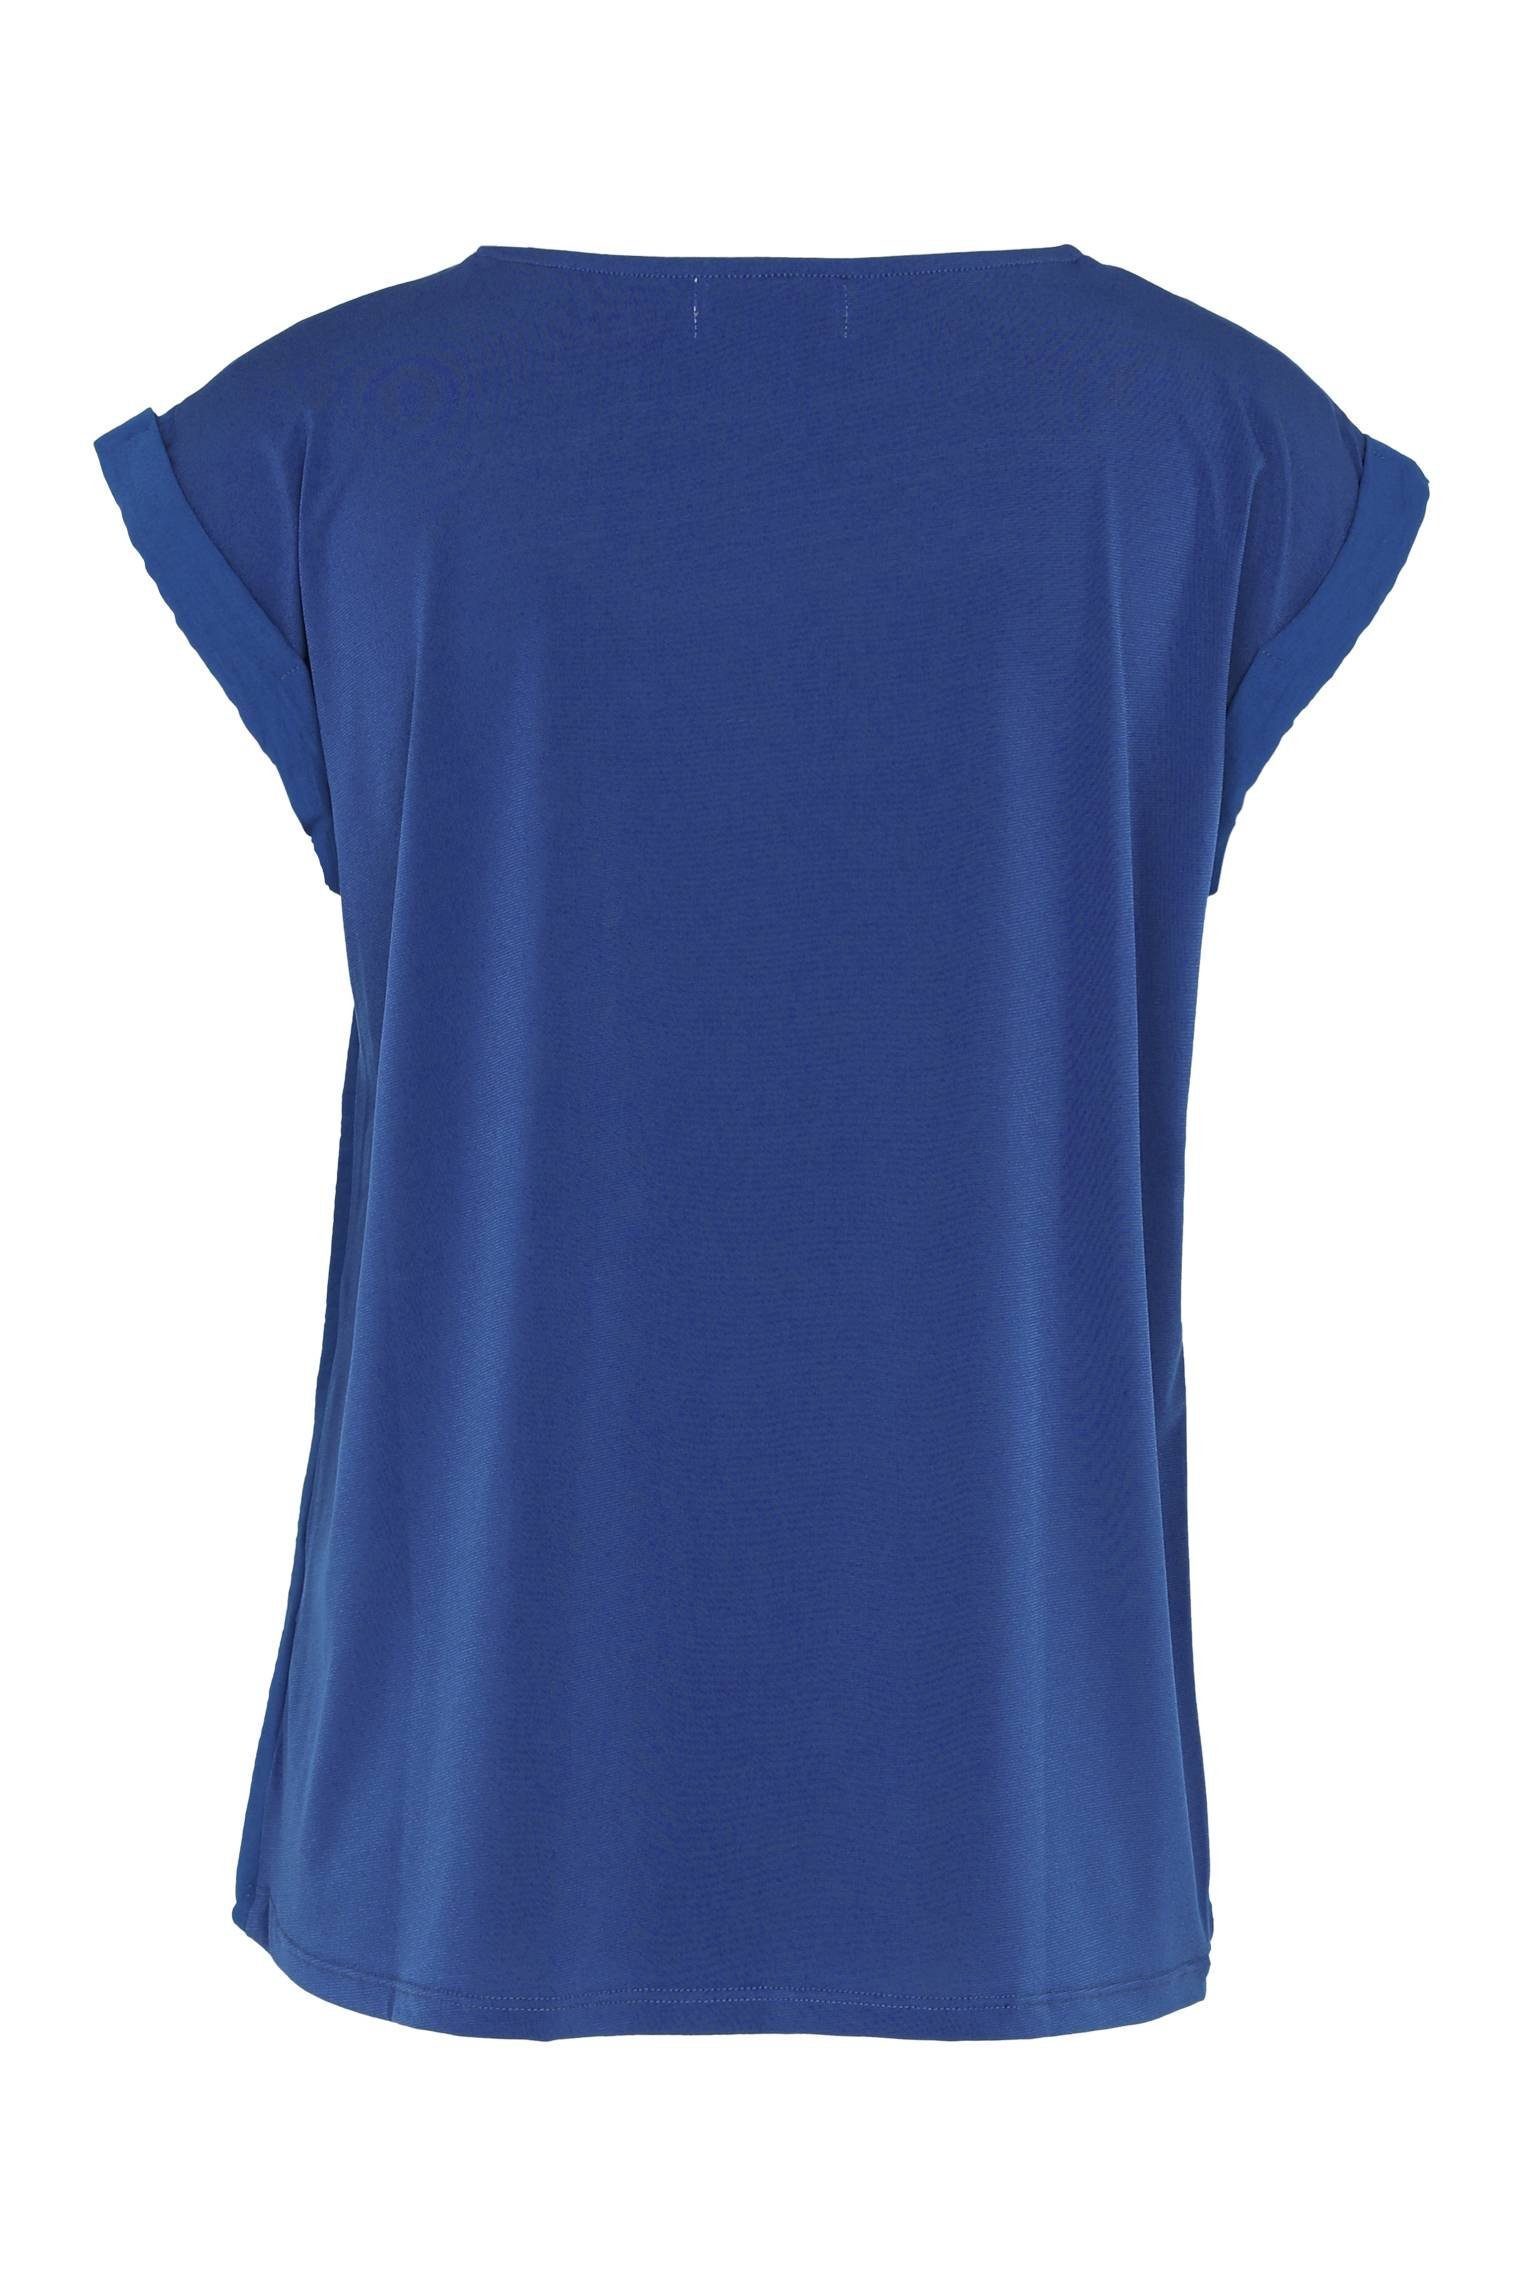 Cassis T-Shirt Kragen T-Shirt Blau Unifarbenes Bearbeitetem Mit Bic